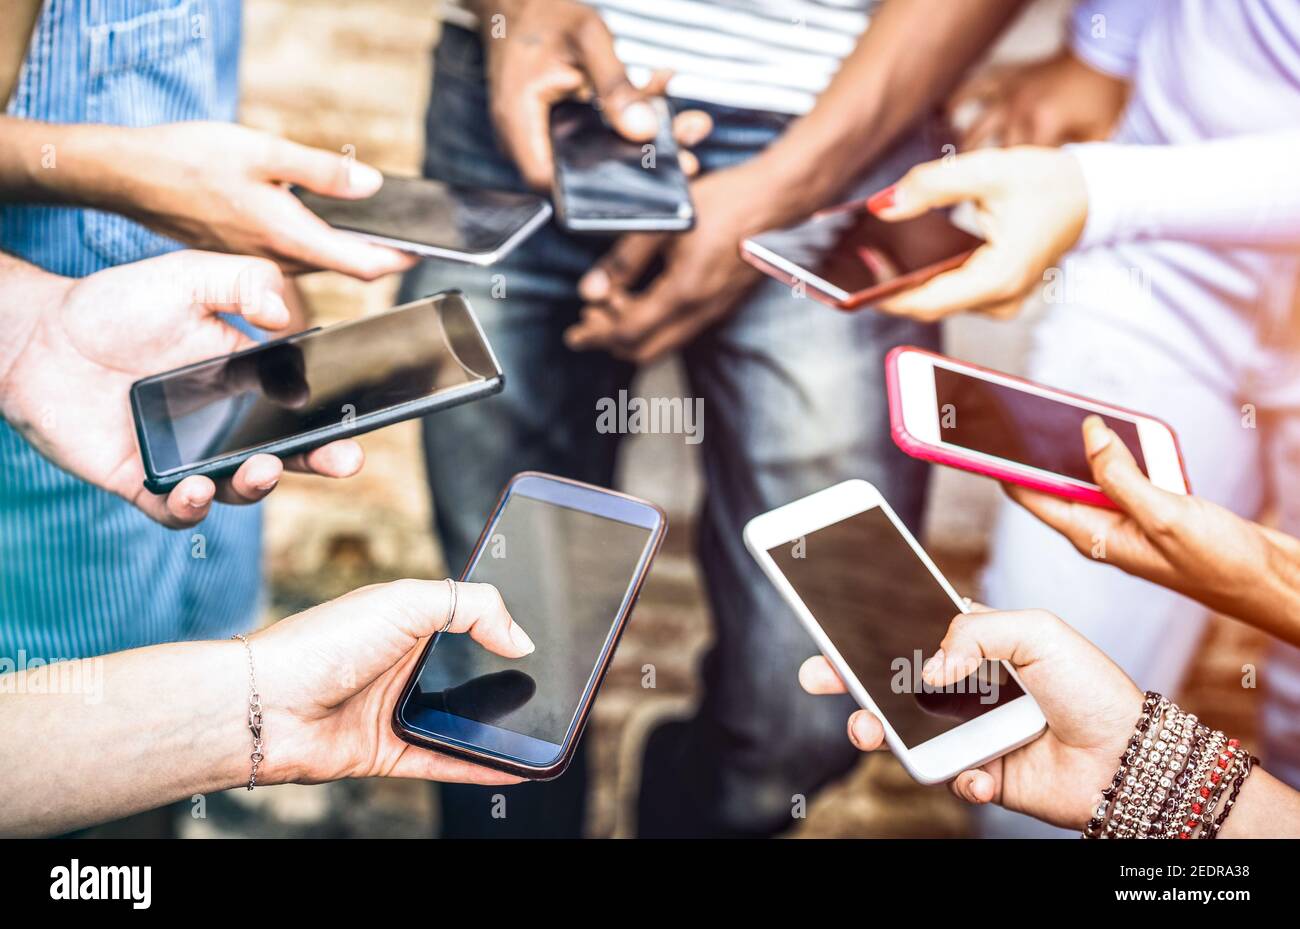 Freunde Gruppe mit süchtig Spaß zusammen mit Smartphones - Hände Teilen von Inhalten in sozialen Netzwerken mit dem mobilen Smartphone Stockfoto